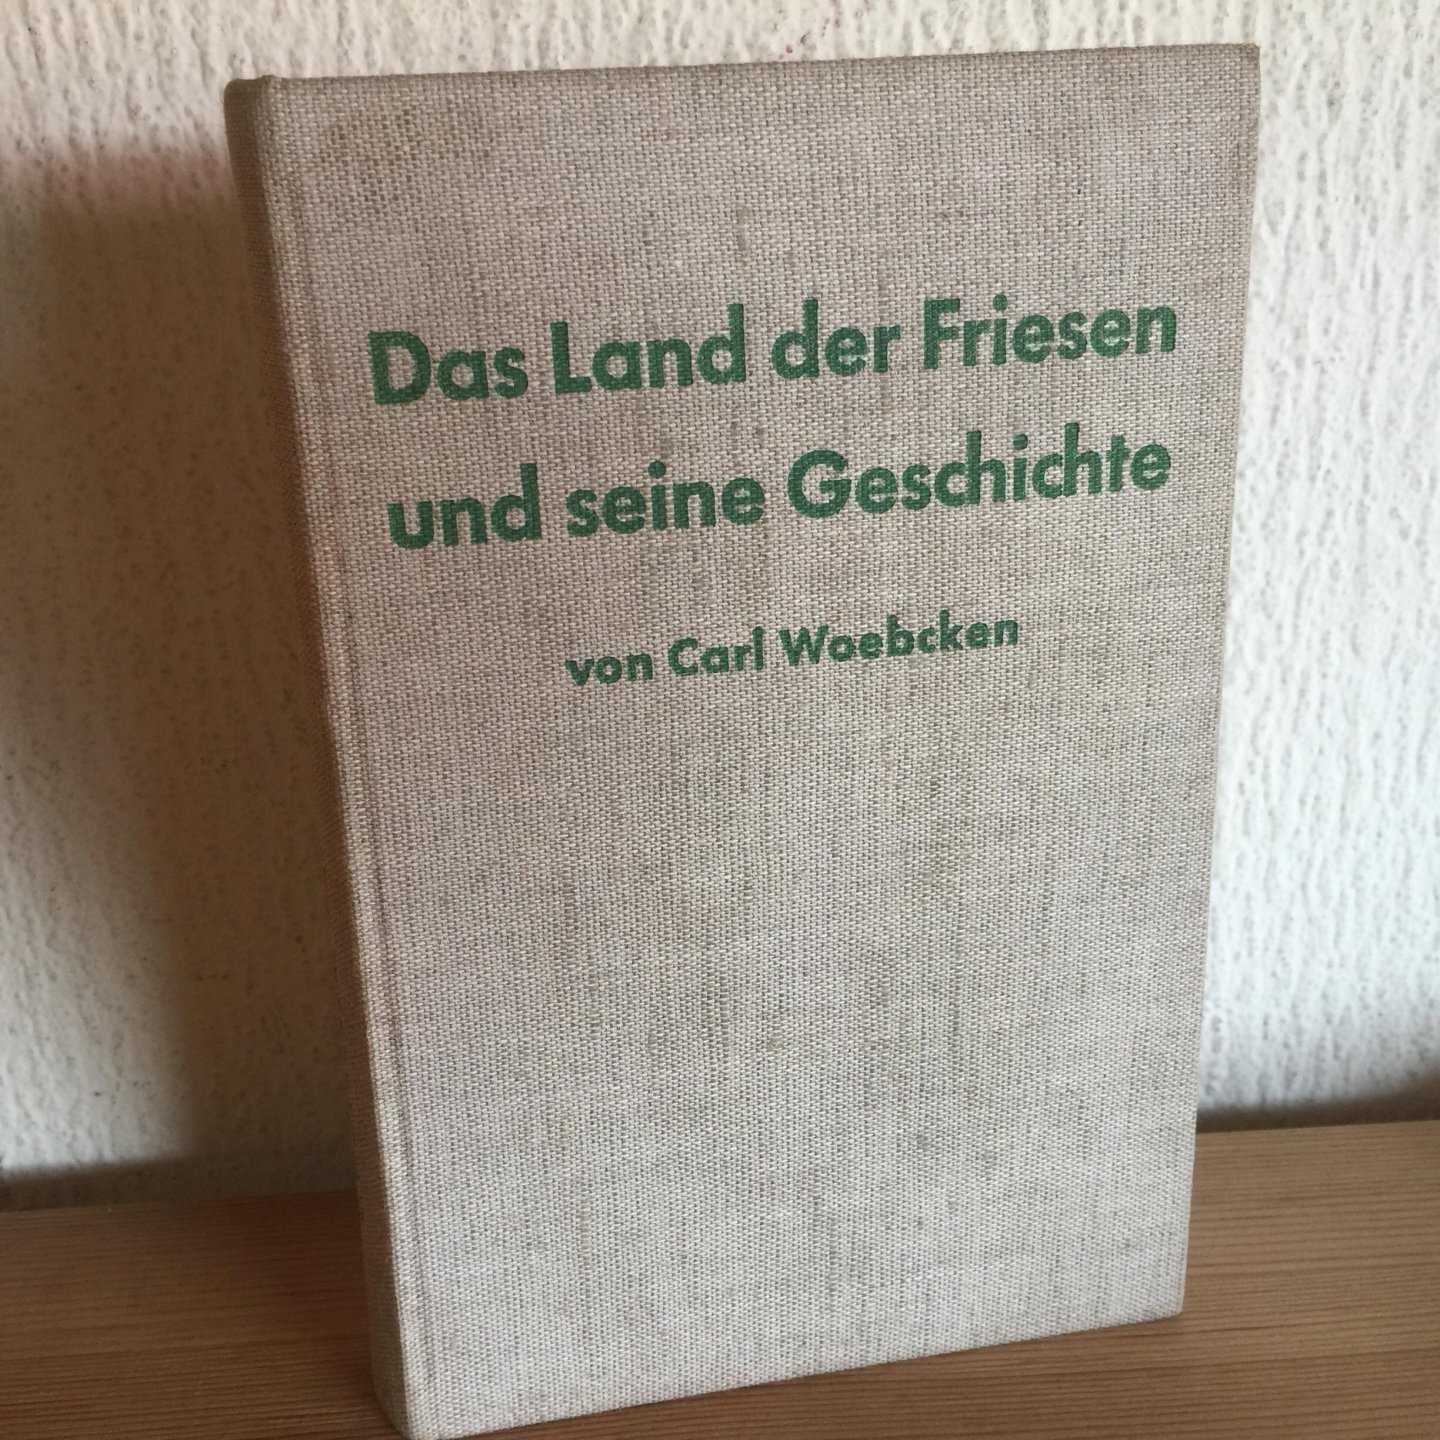 Carl Woebcken - Das Land der Friesen und seine Geschichte ,mit 9 bildern  9 Bildern und  6 Karten